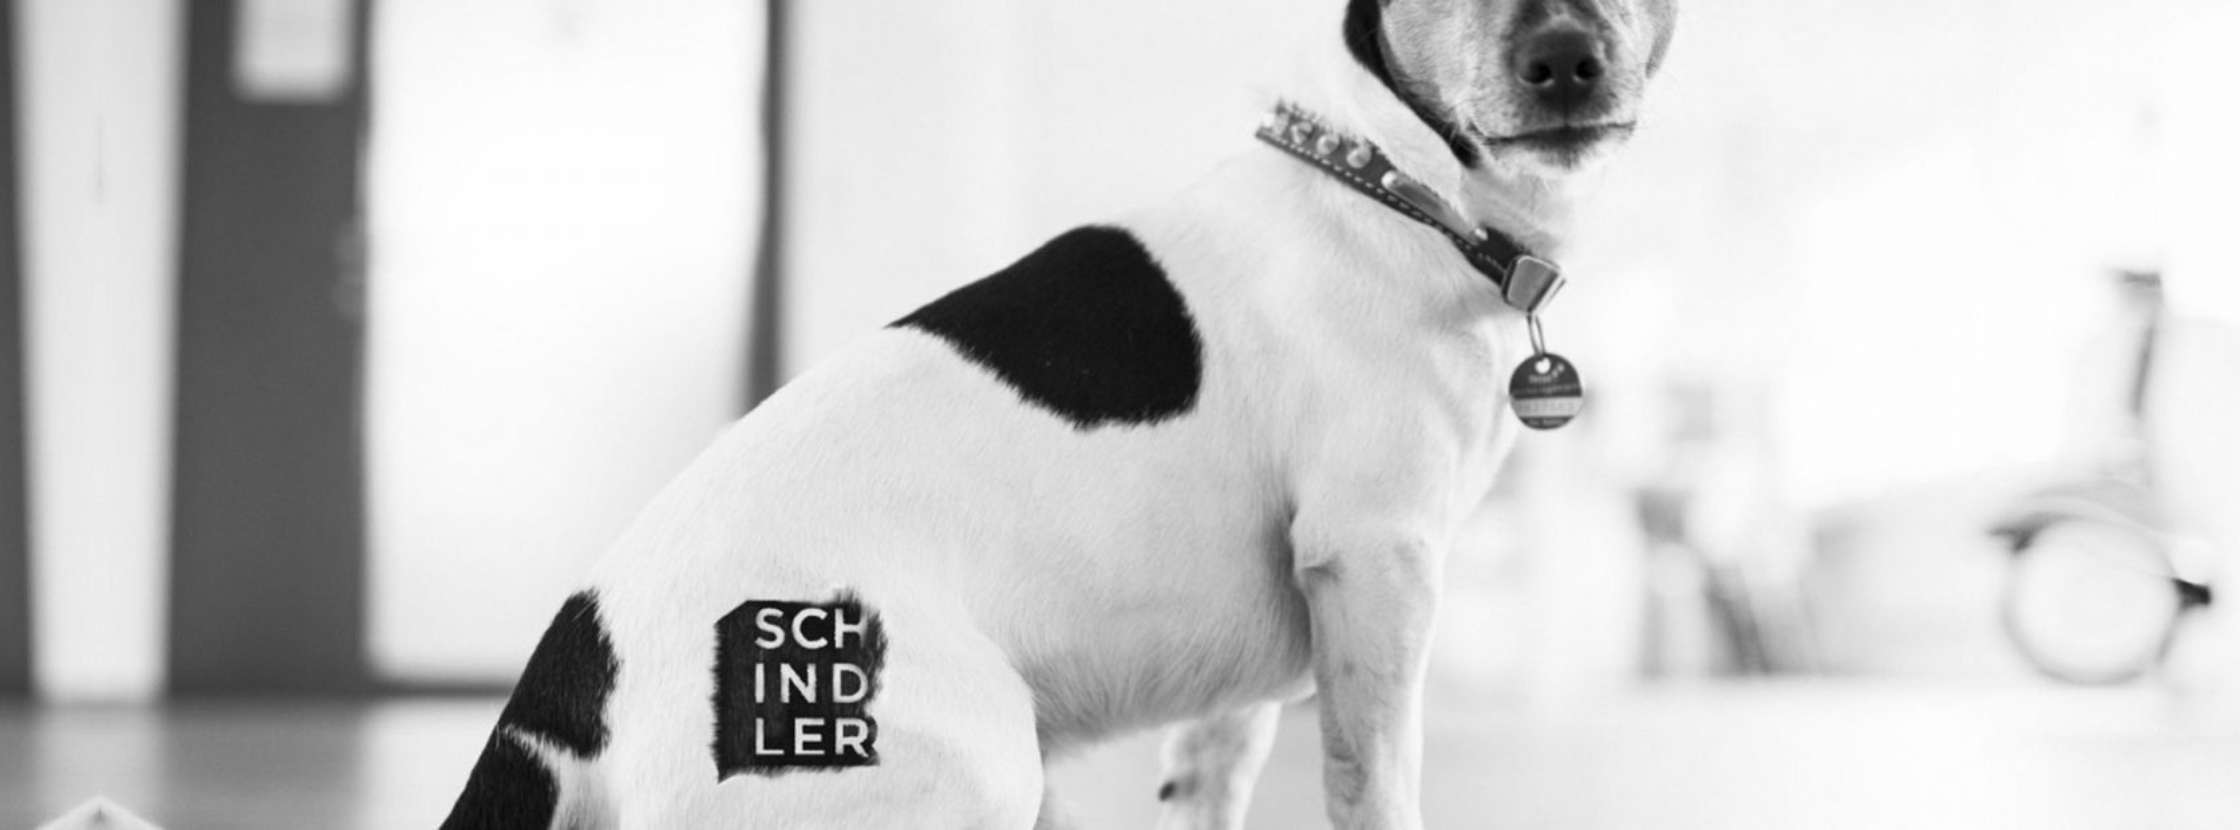 schindler creations hund mit logo am hintern